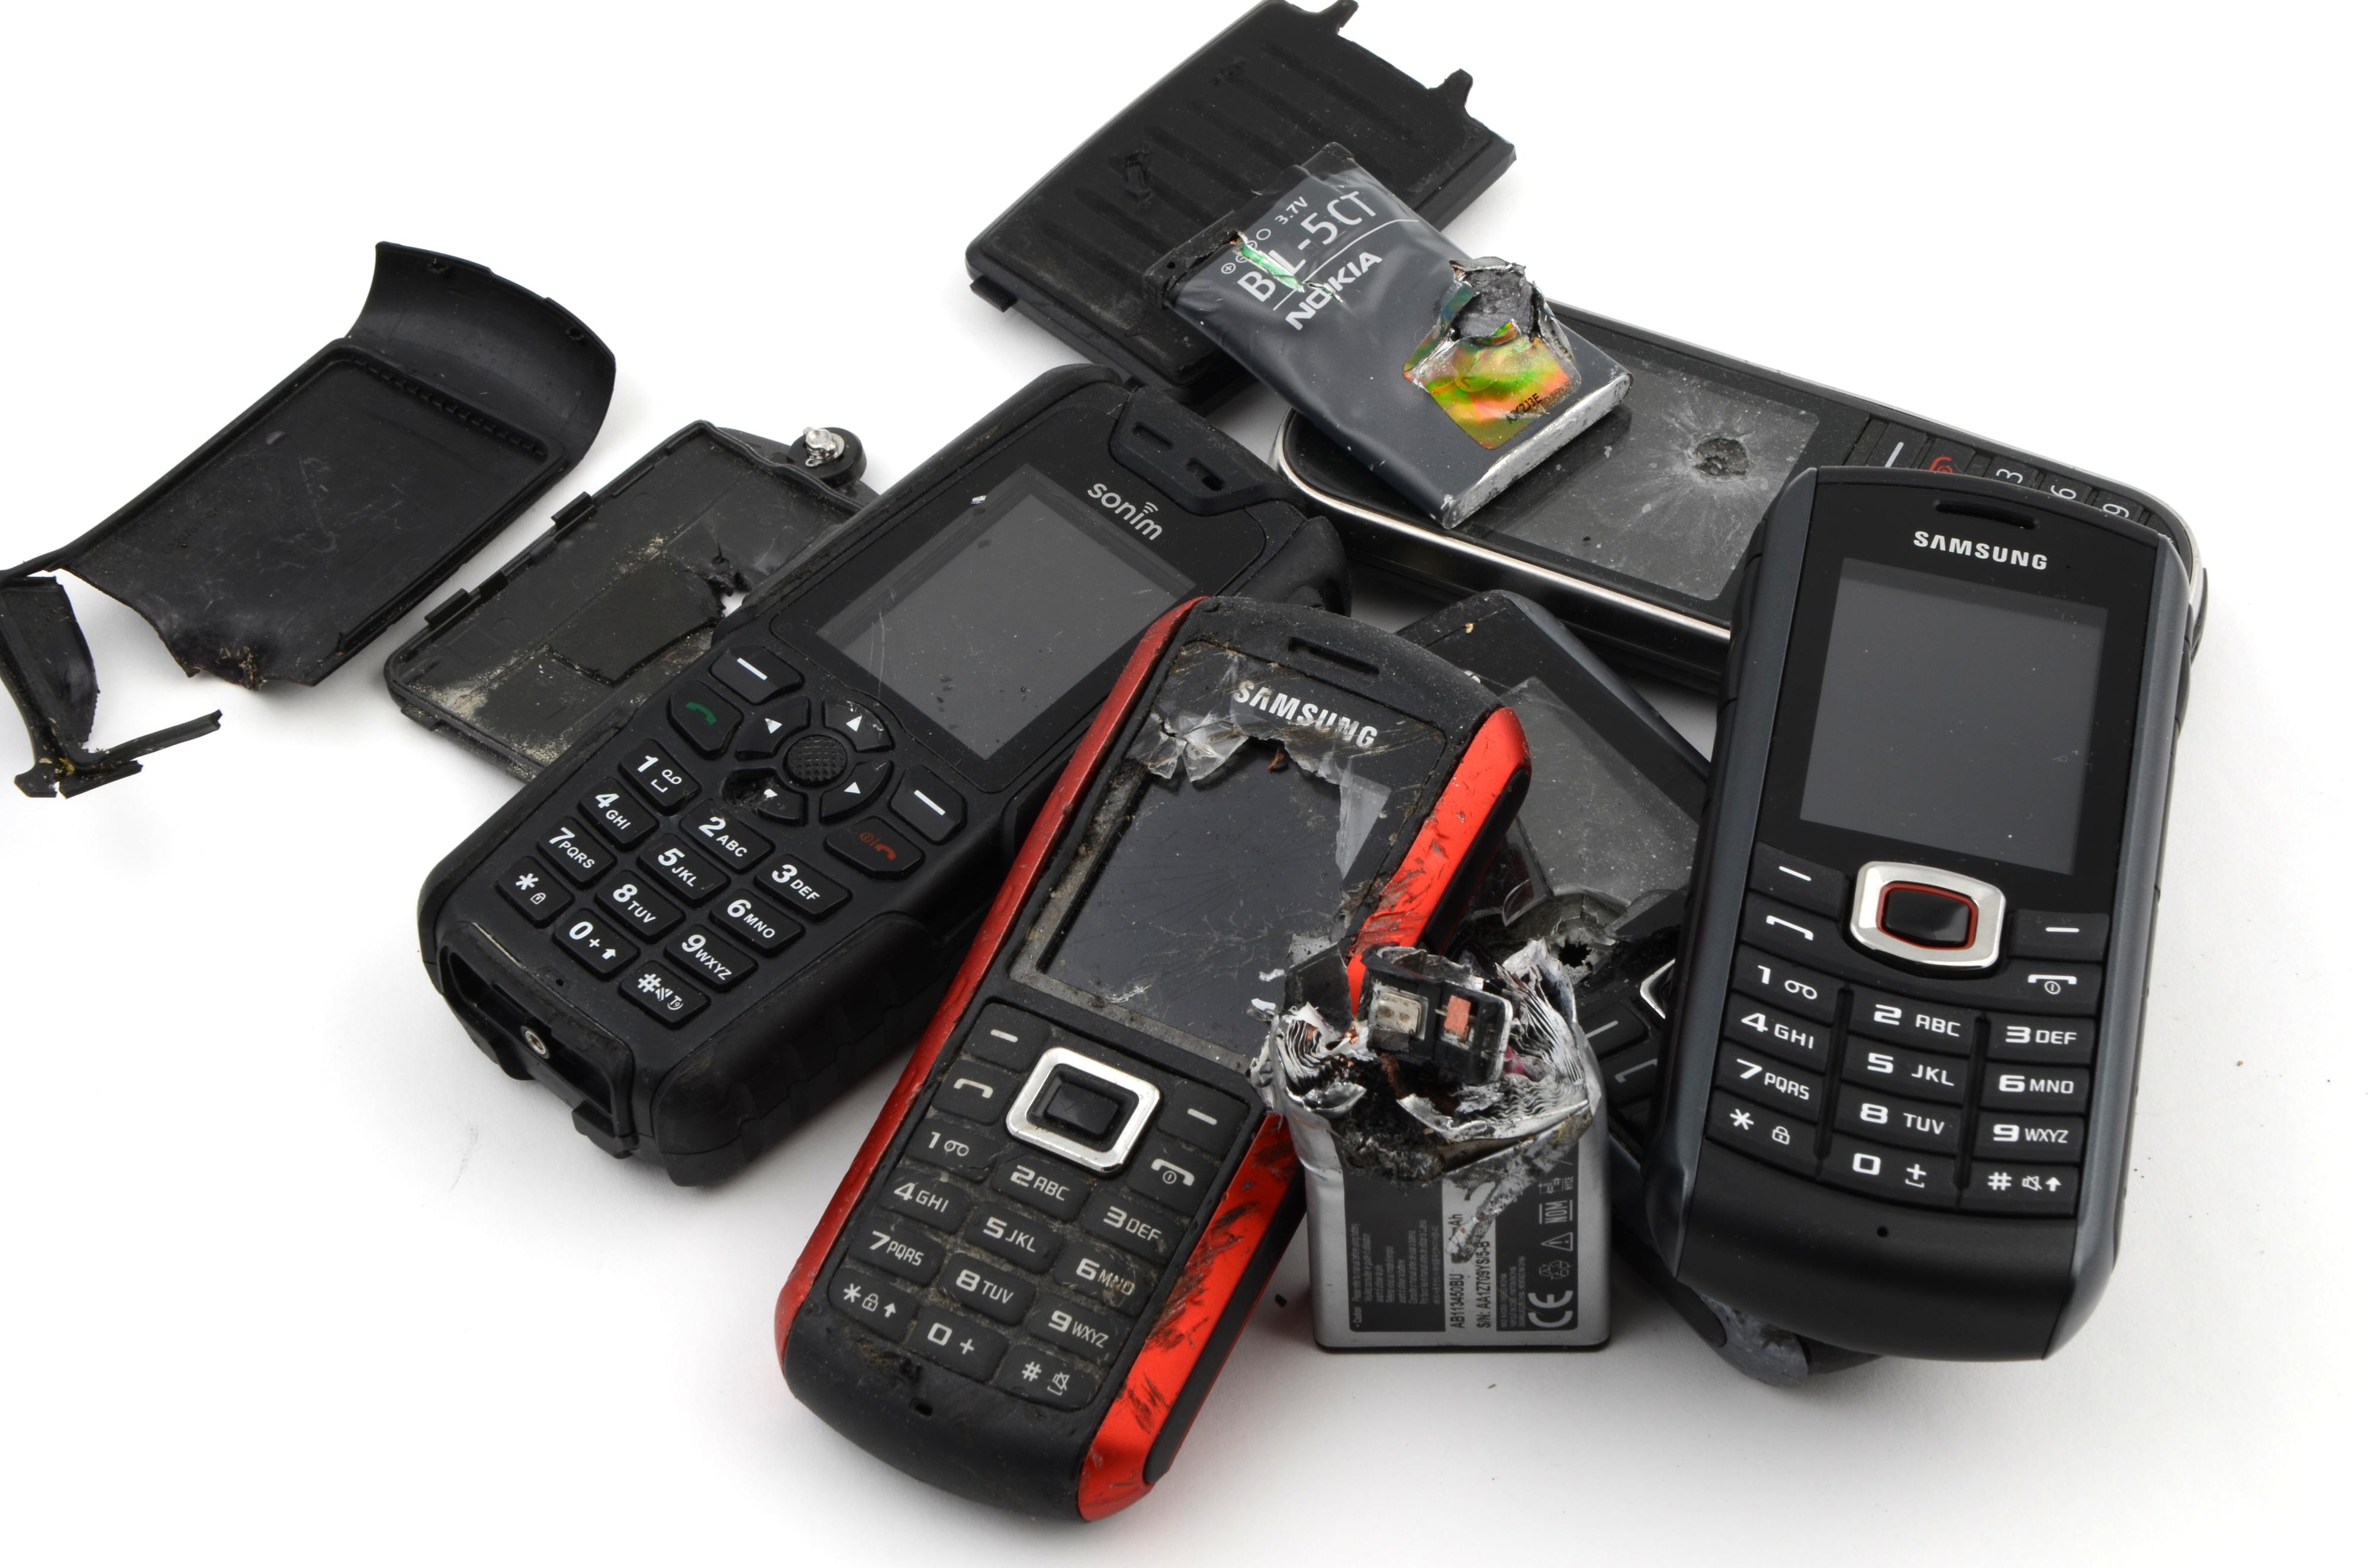 B2710 stiller seg i rekken av støtsikre telefoner. Her er den sammen med noen av de vi har testet til døde tidligere.